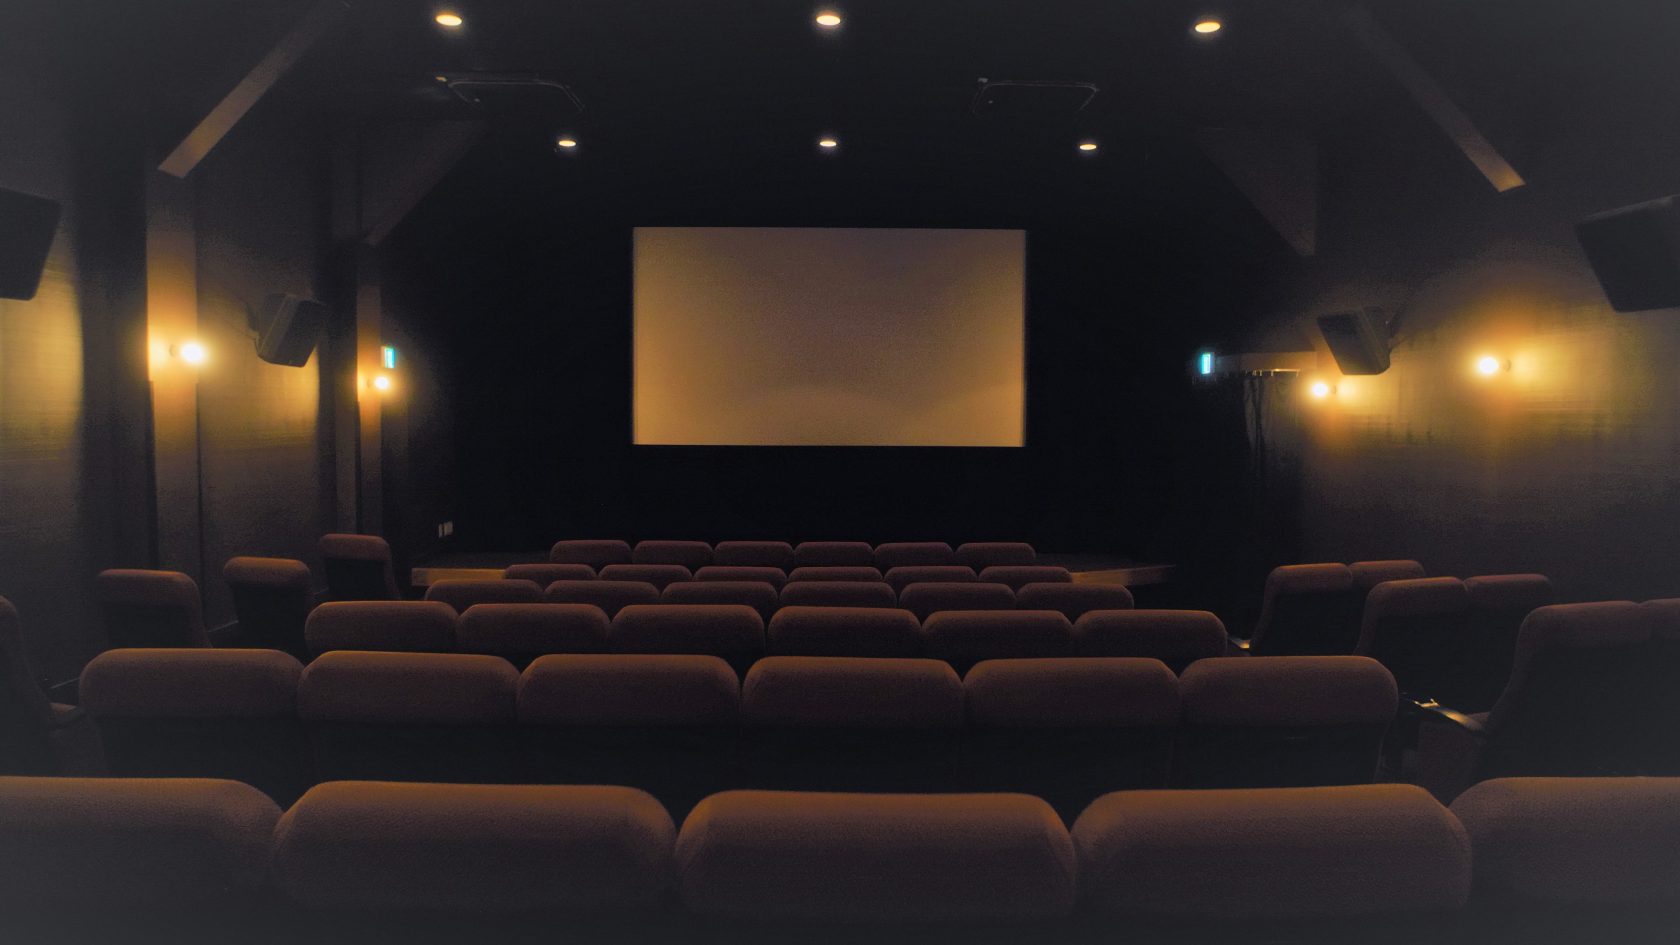 Fukaya Cinema